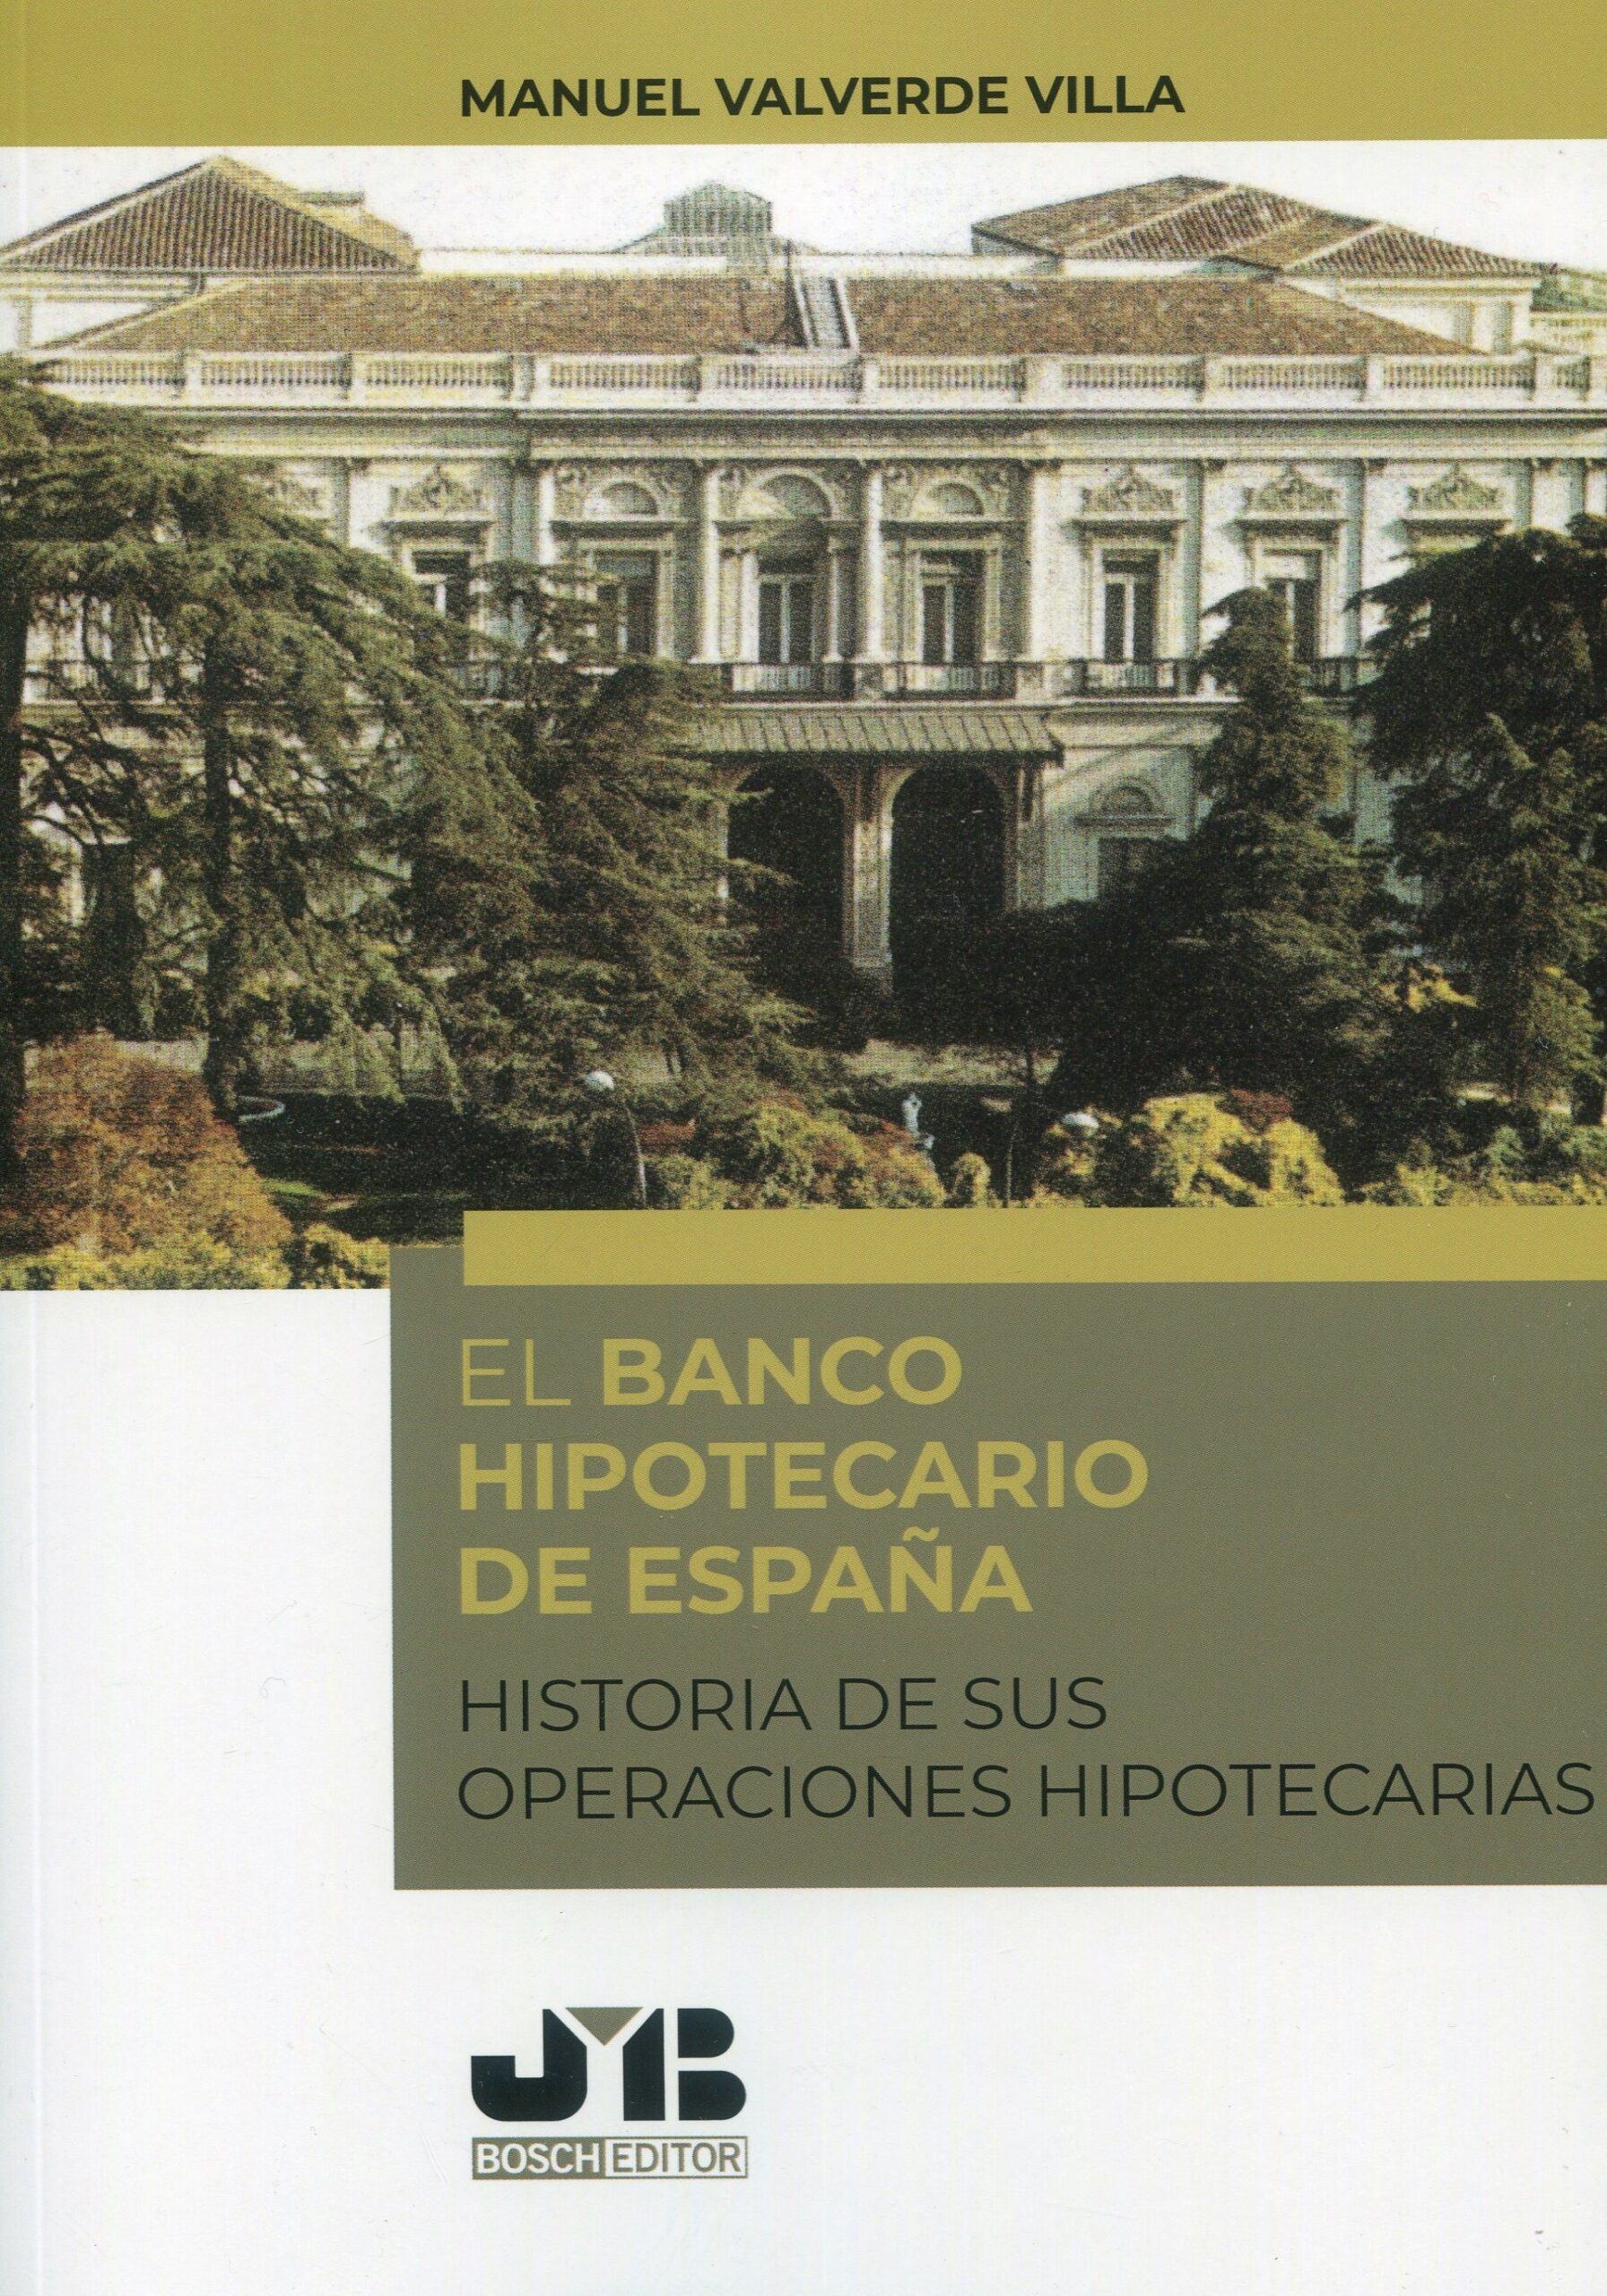 El Banco Hipotecario de España